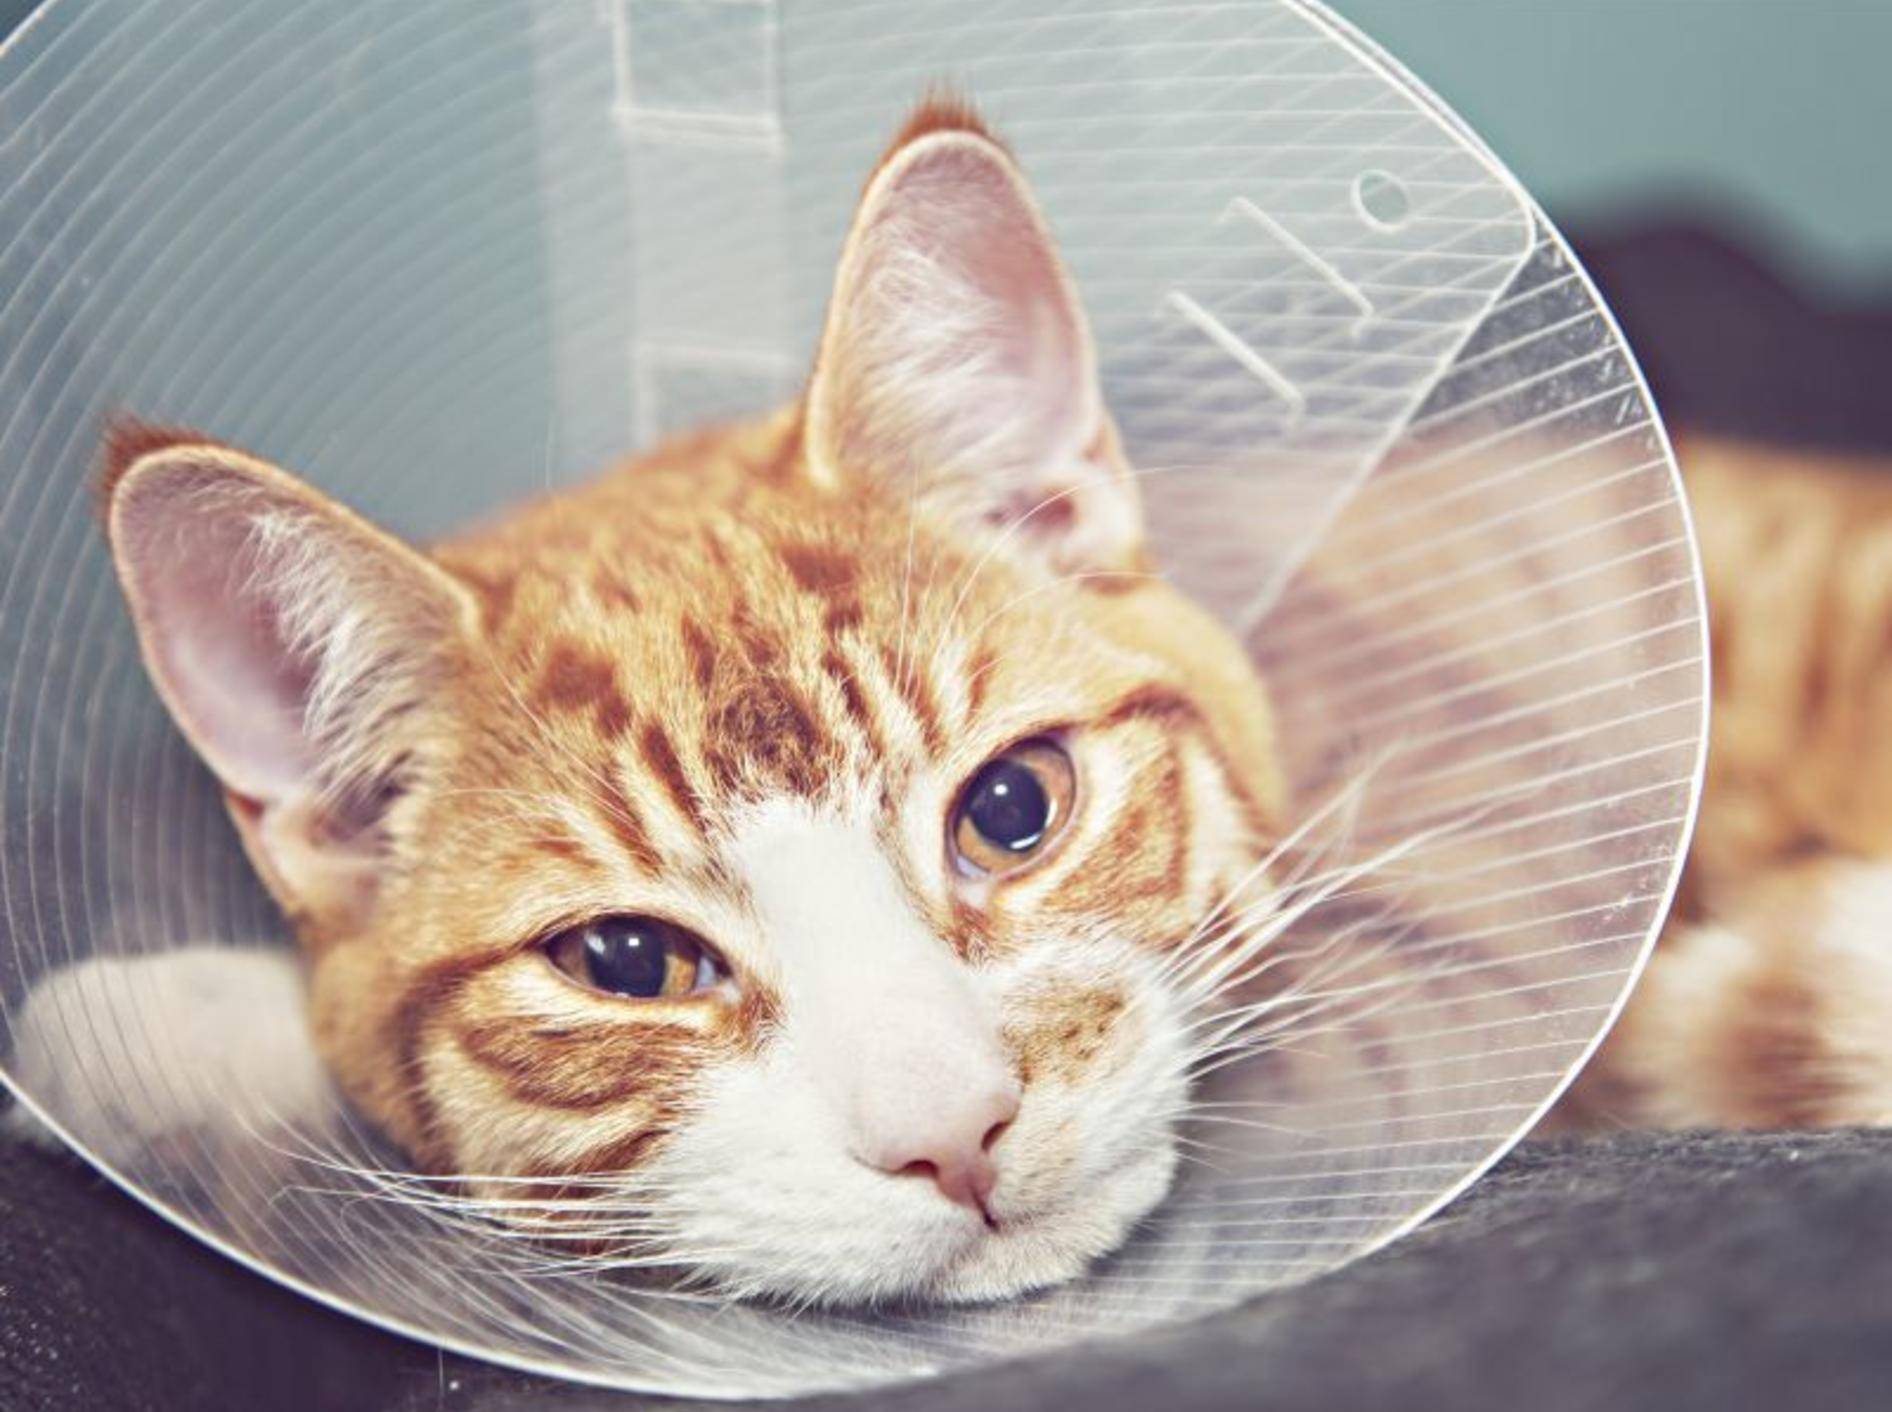 Nach der OP braucht die Katze Ruhe, Liebe und Wärme – Bild: Shutterstock / Sophie McAulay